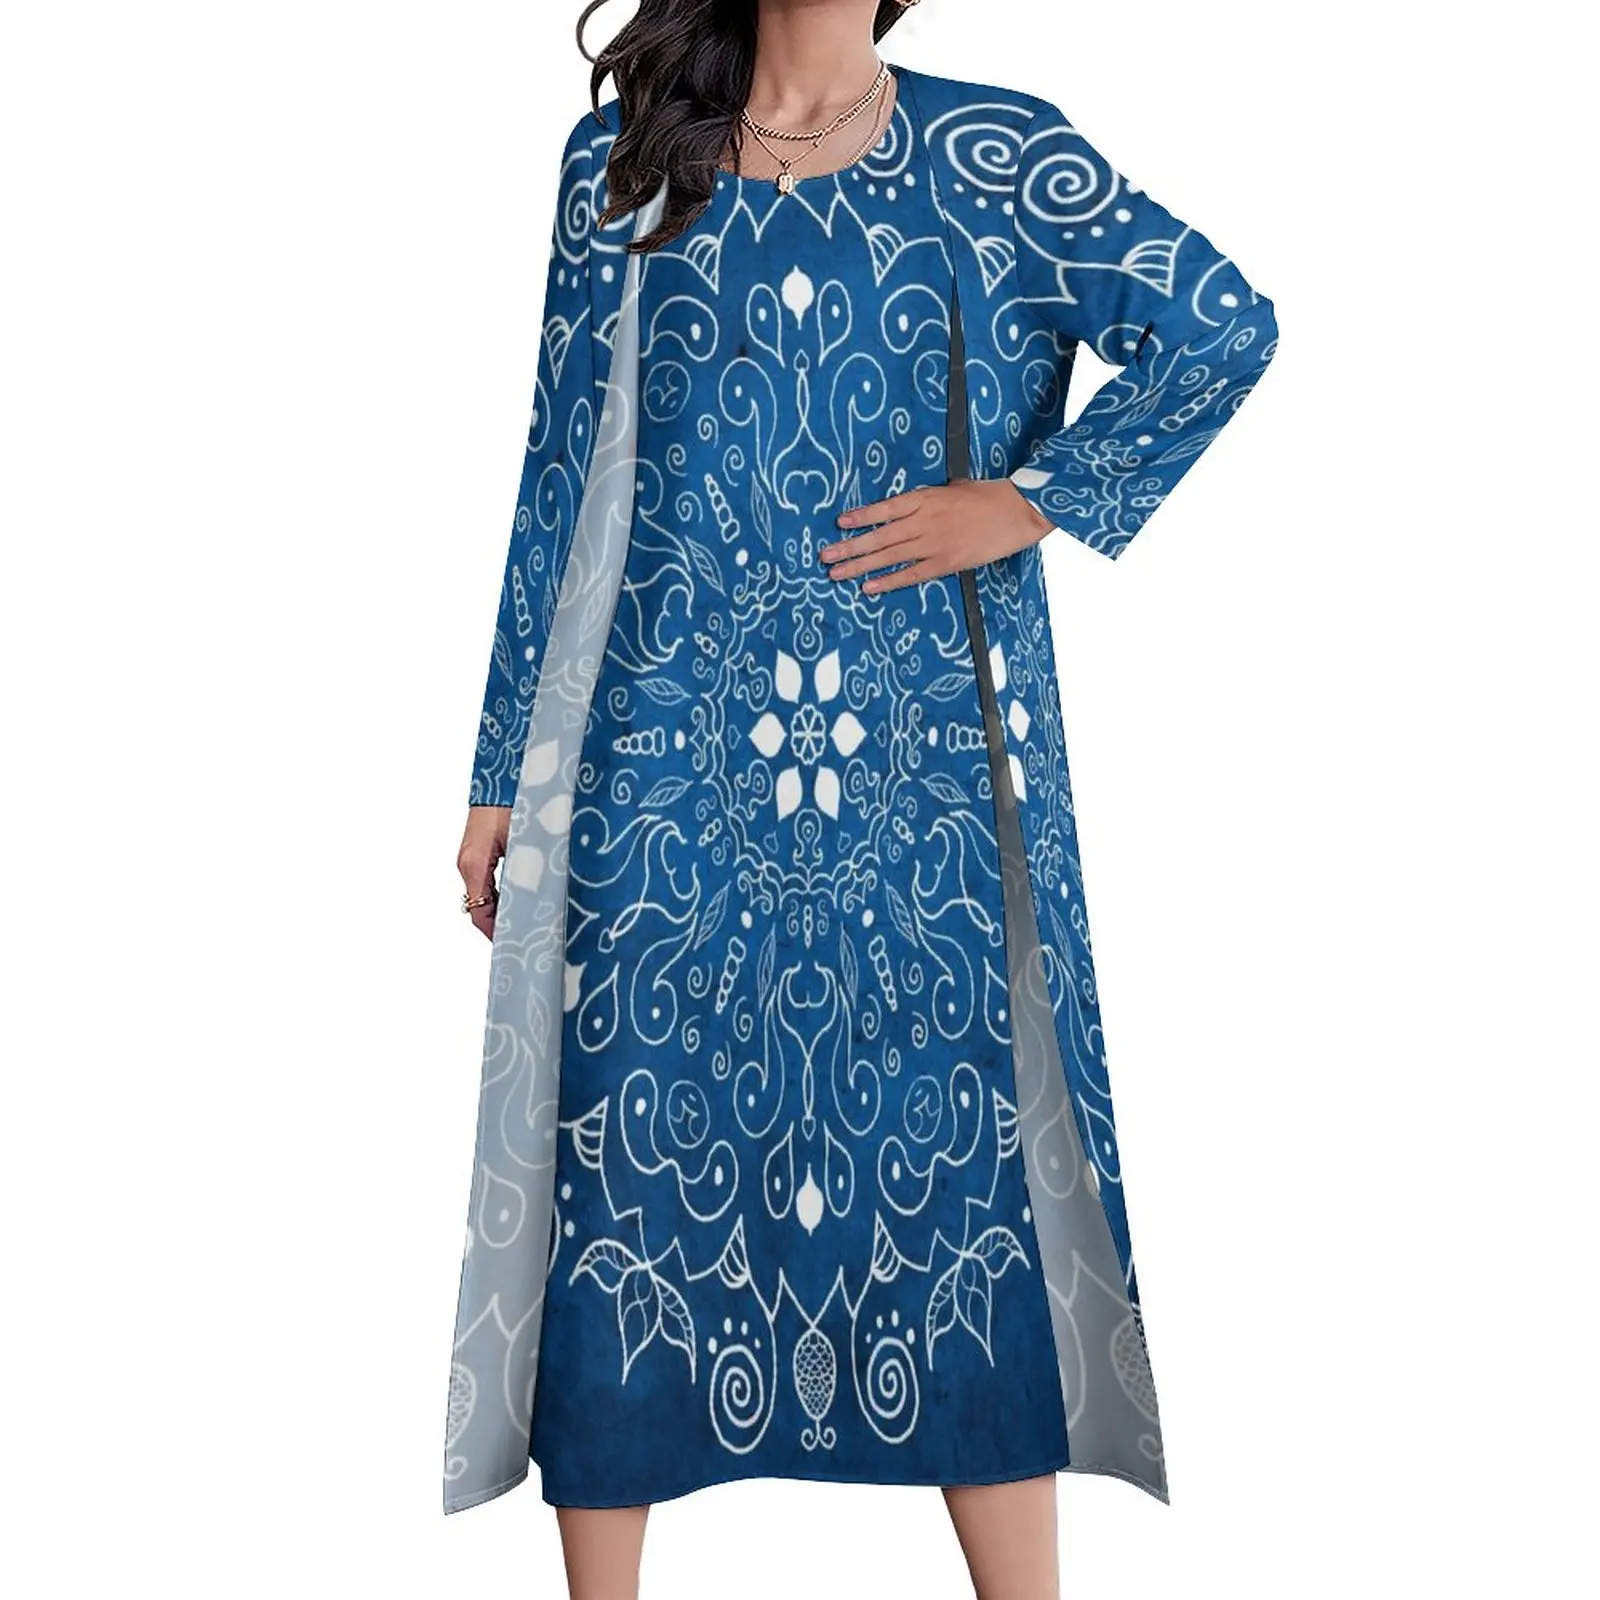 

Blue Mandala Dress Retro Bohemia Print Cute Maxi Dress Long Sleeve Custom Boho Beach Long Dresses Aesthetic Big Size Clothing